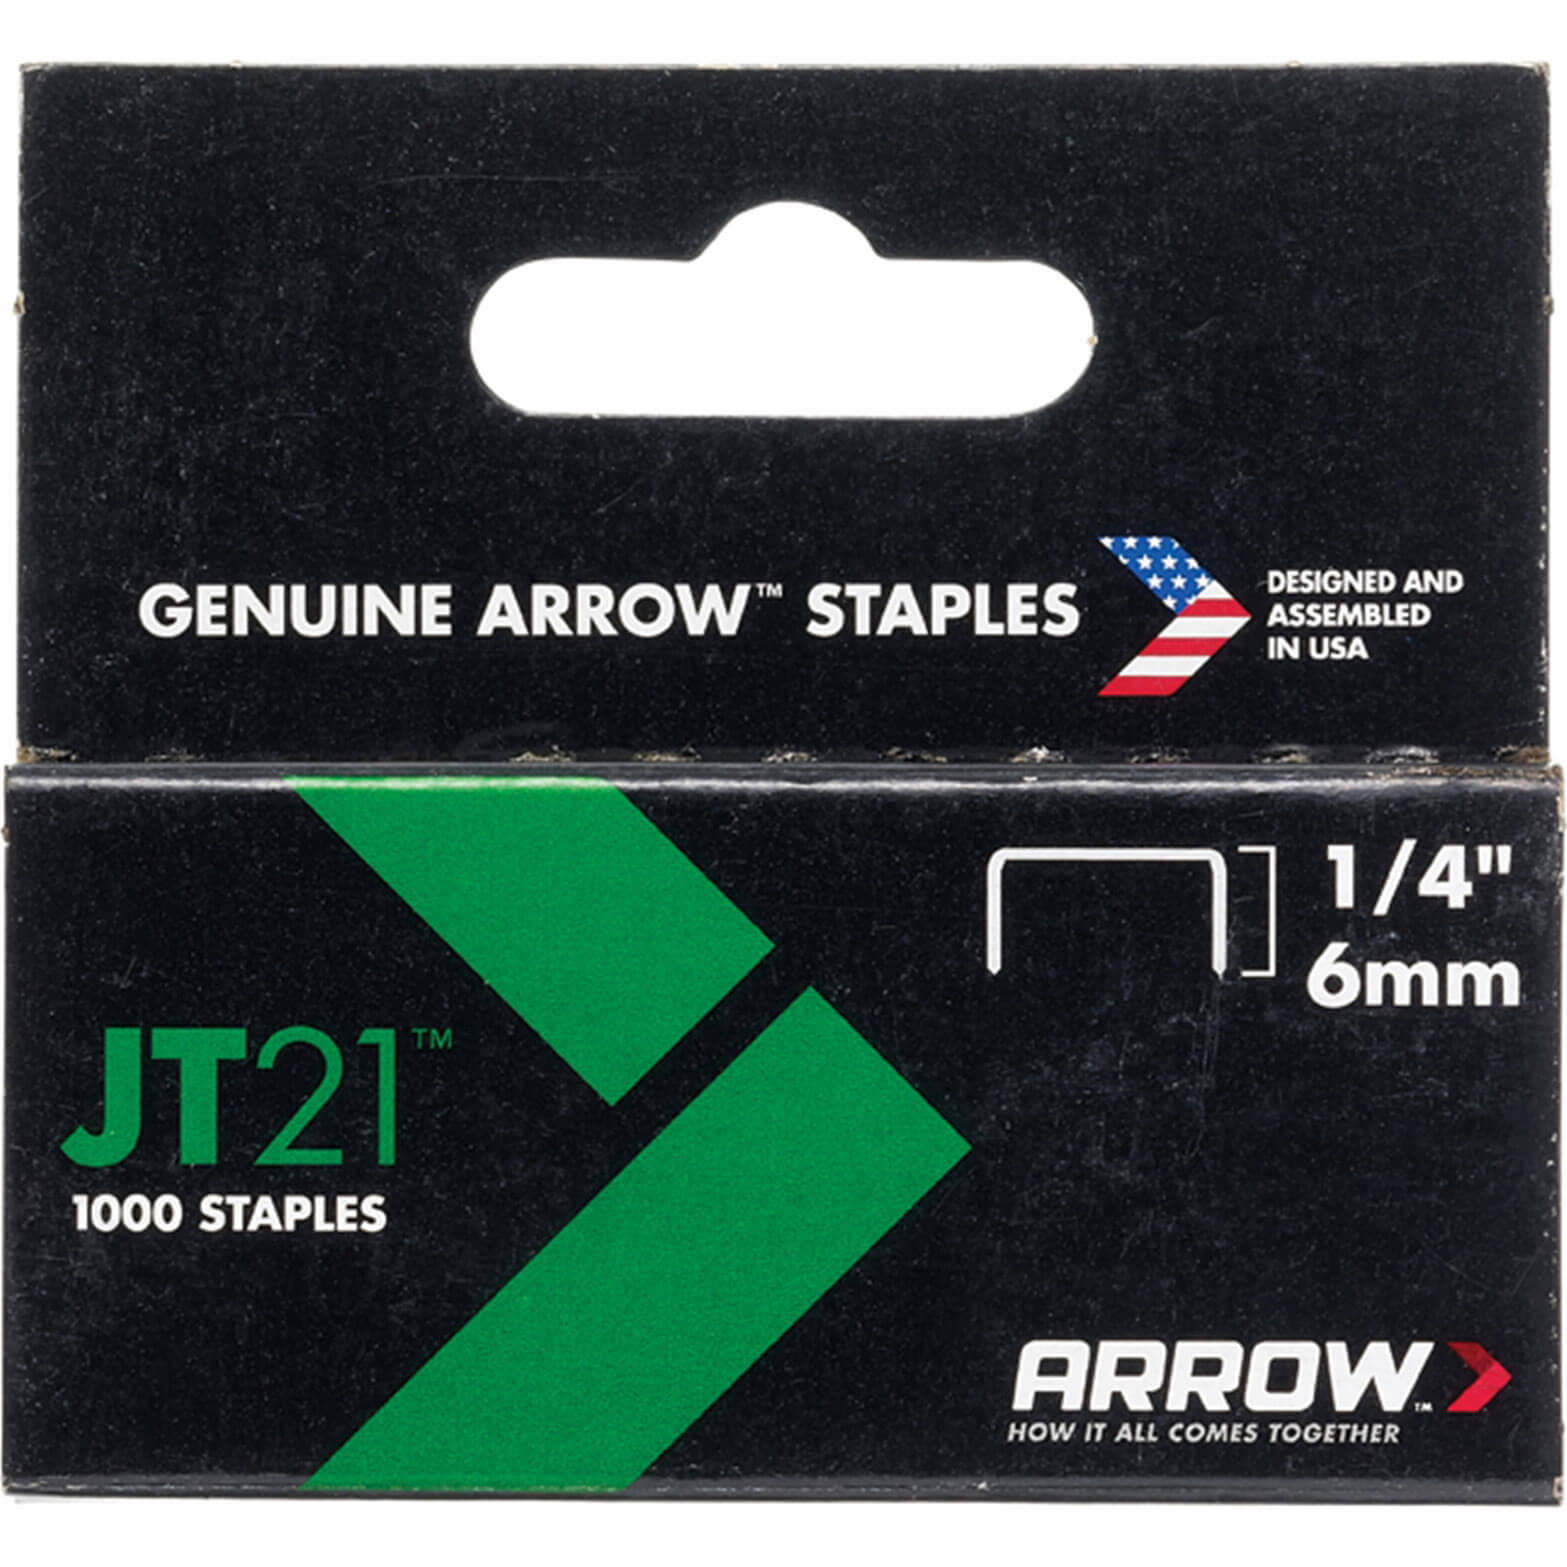 Photo of Arrow Staples For Jt21 / T27 Staple Guns 6mm Pack Of 1000